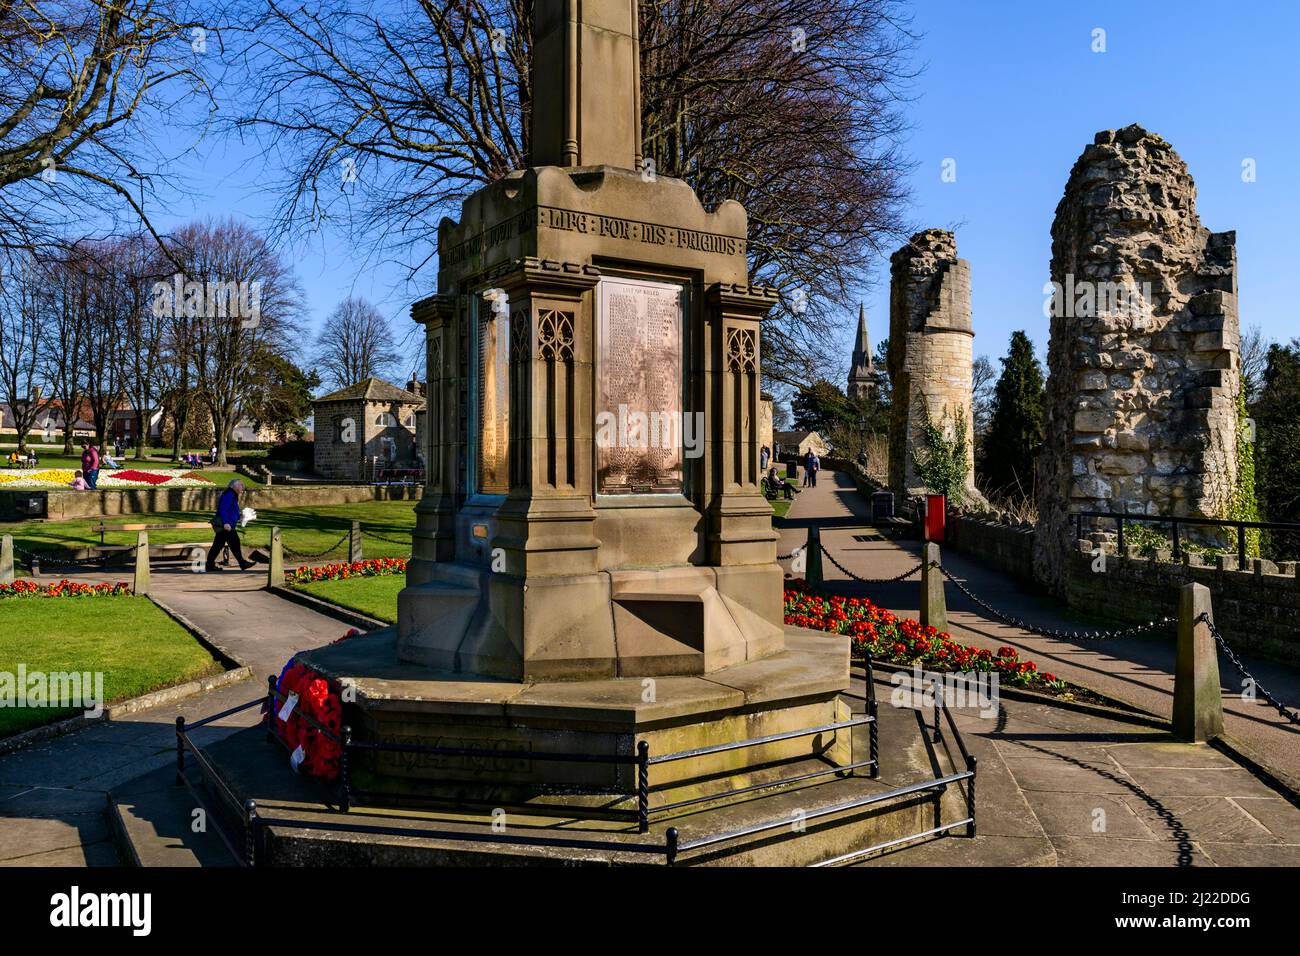 Gente que se relaja caminando por senderos en el parque soleado (memorial de guerra, amapolas rojas, ruinas antiguas, cielo azul) - Castillo de Knaresborough, North Yorkshire Inglaterra Reino Unido. Foto de stock